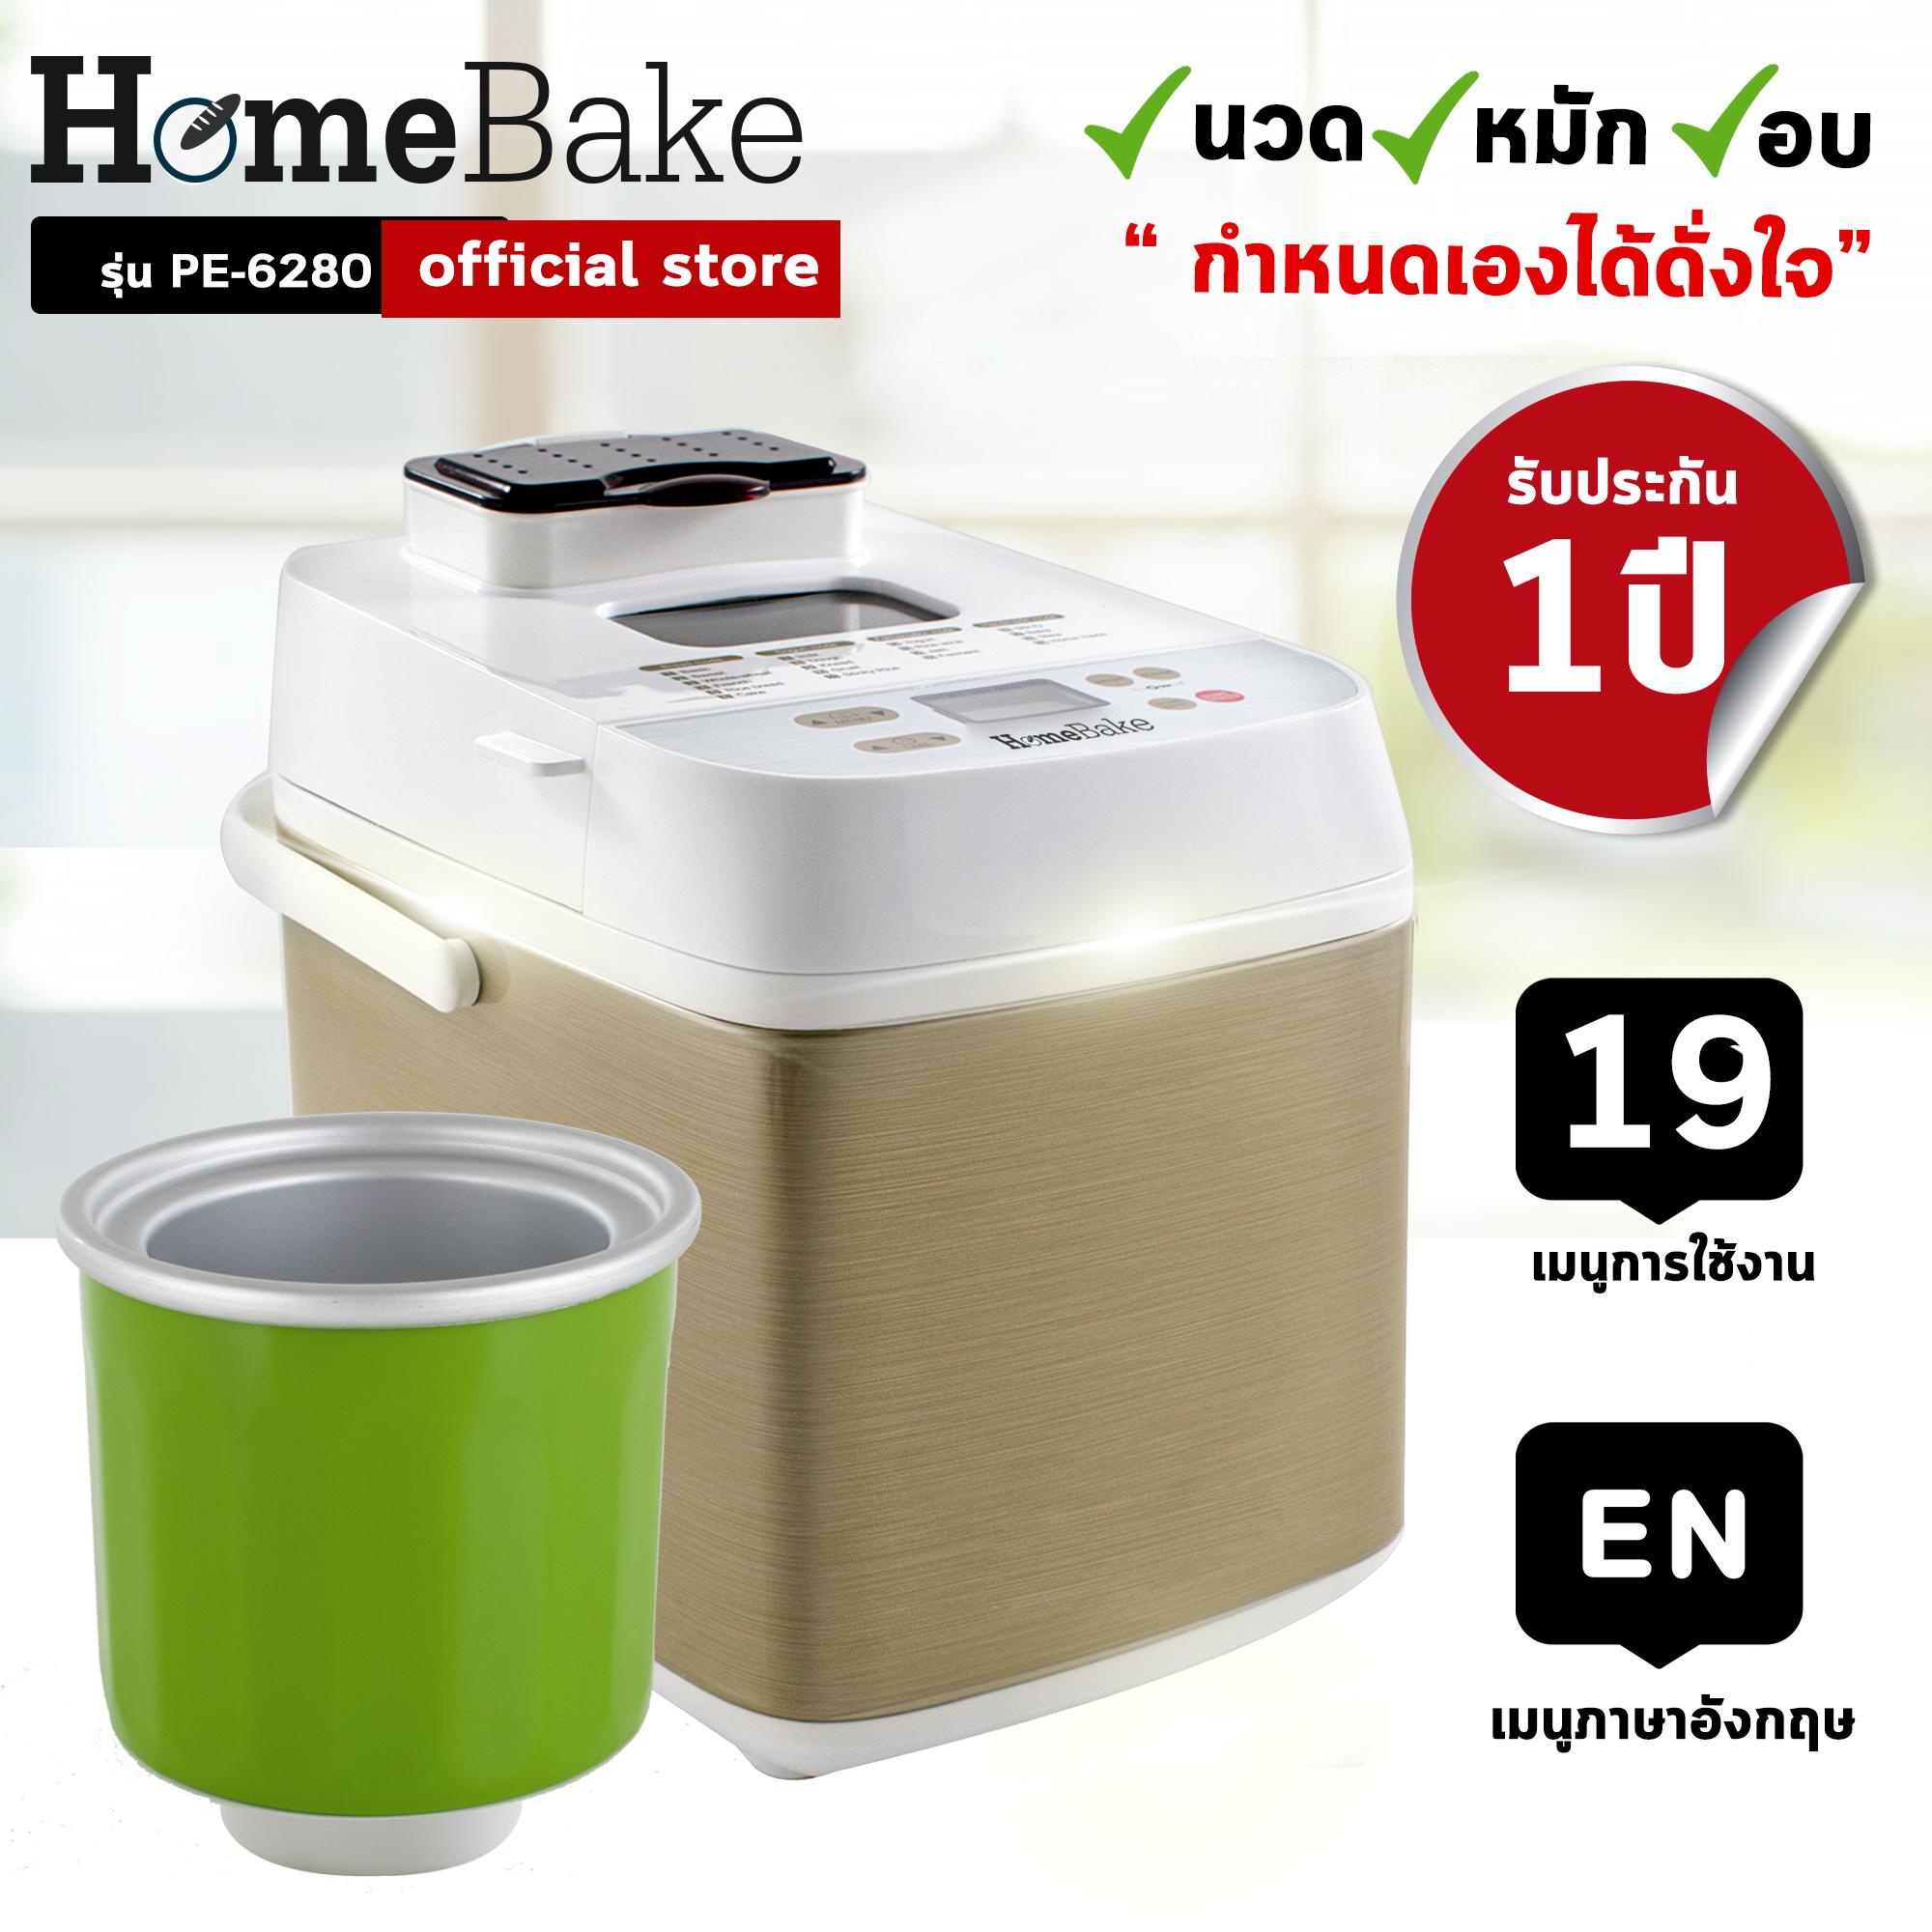 เครื่องทำขนมปังอเนกประสงค์ HomeBake พร้อมอุปกรณ์ทำไอศกรีม รุ่น PE6280